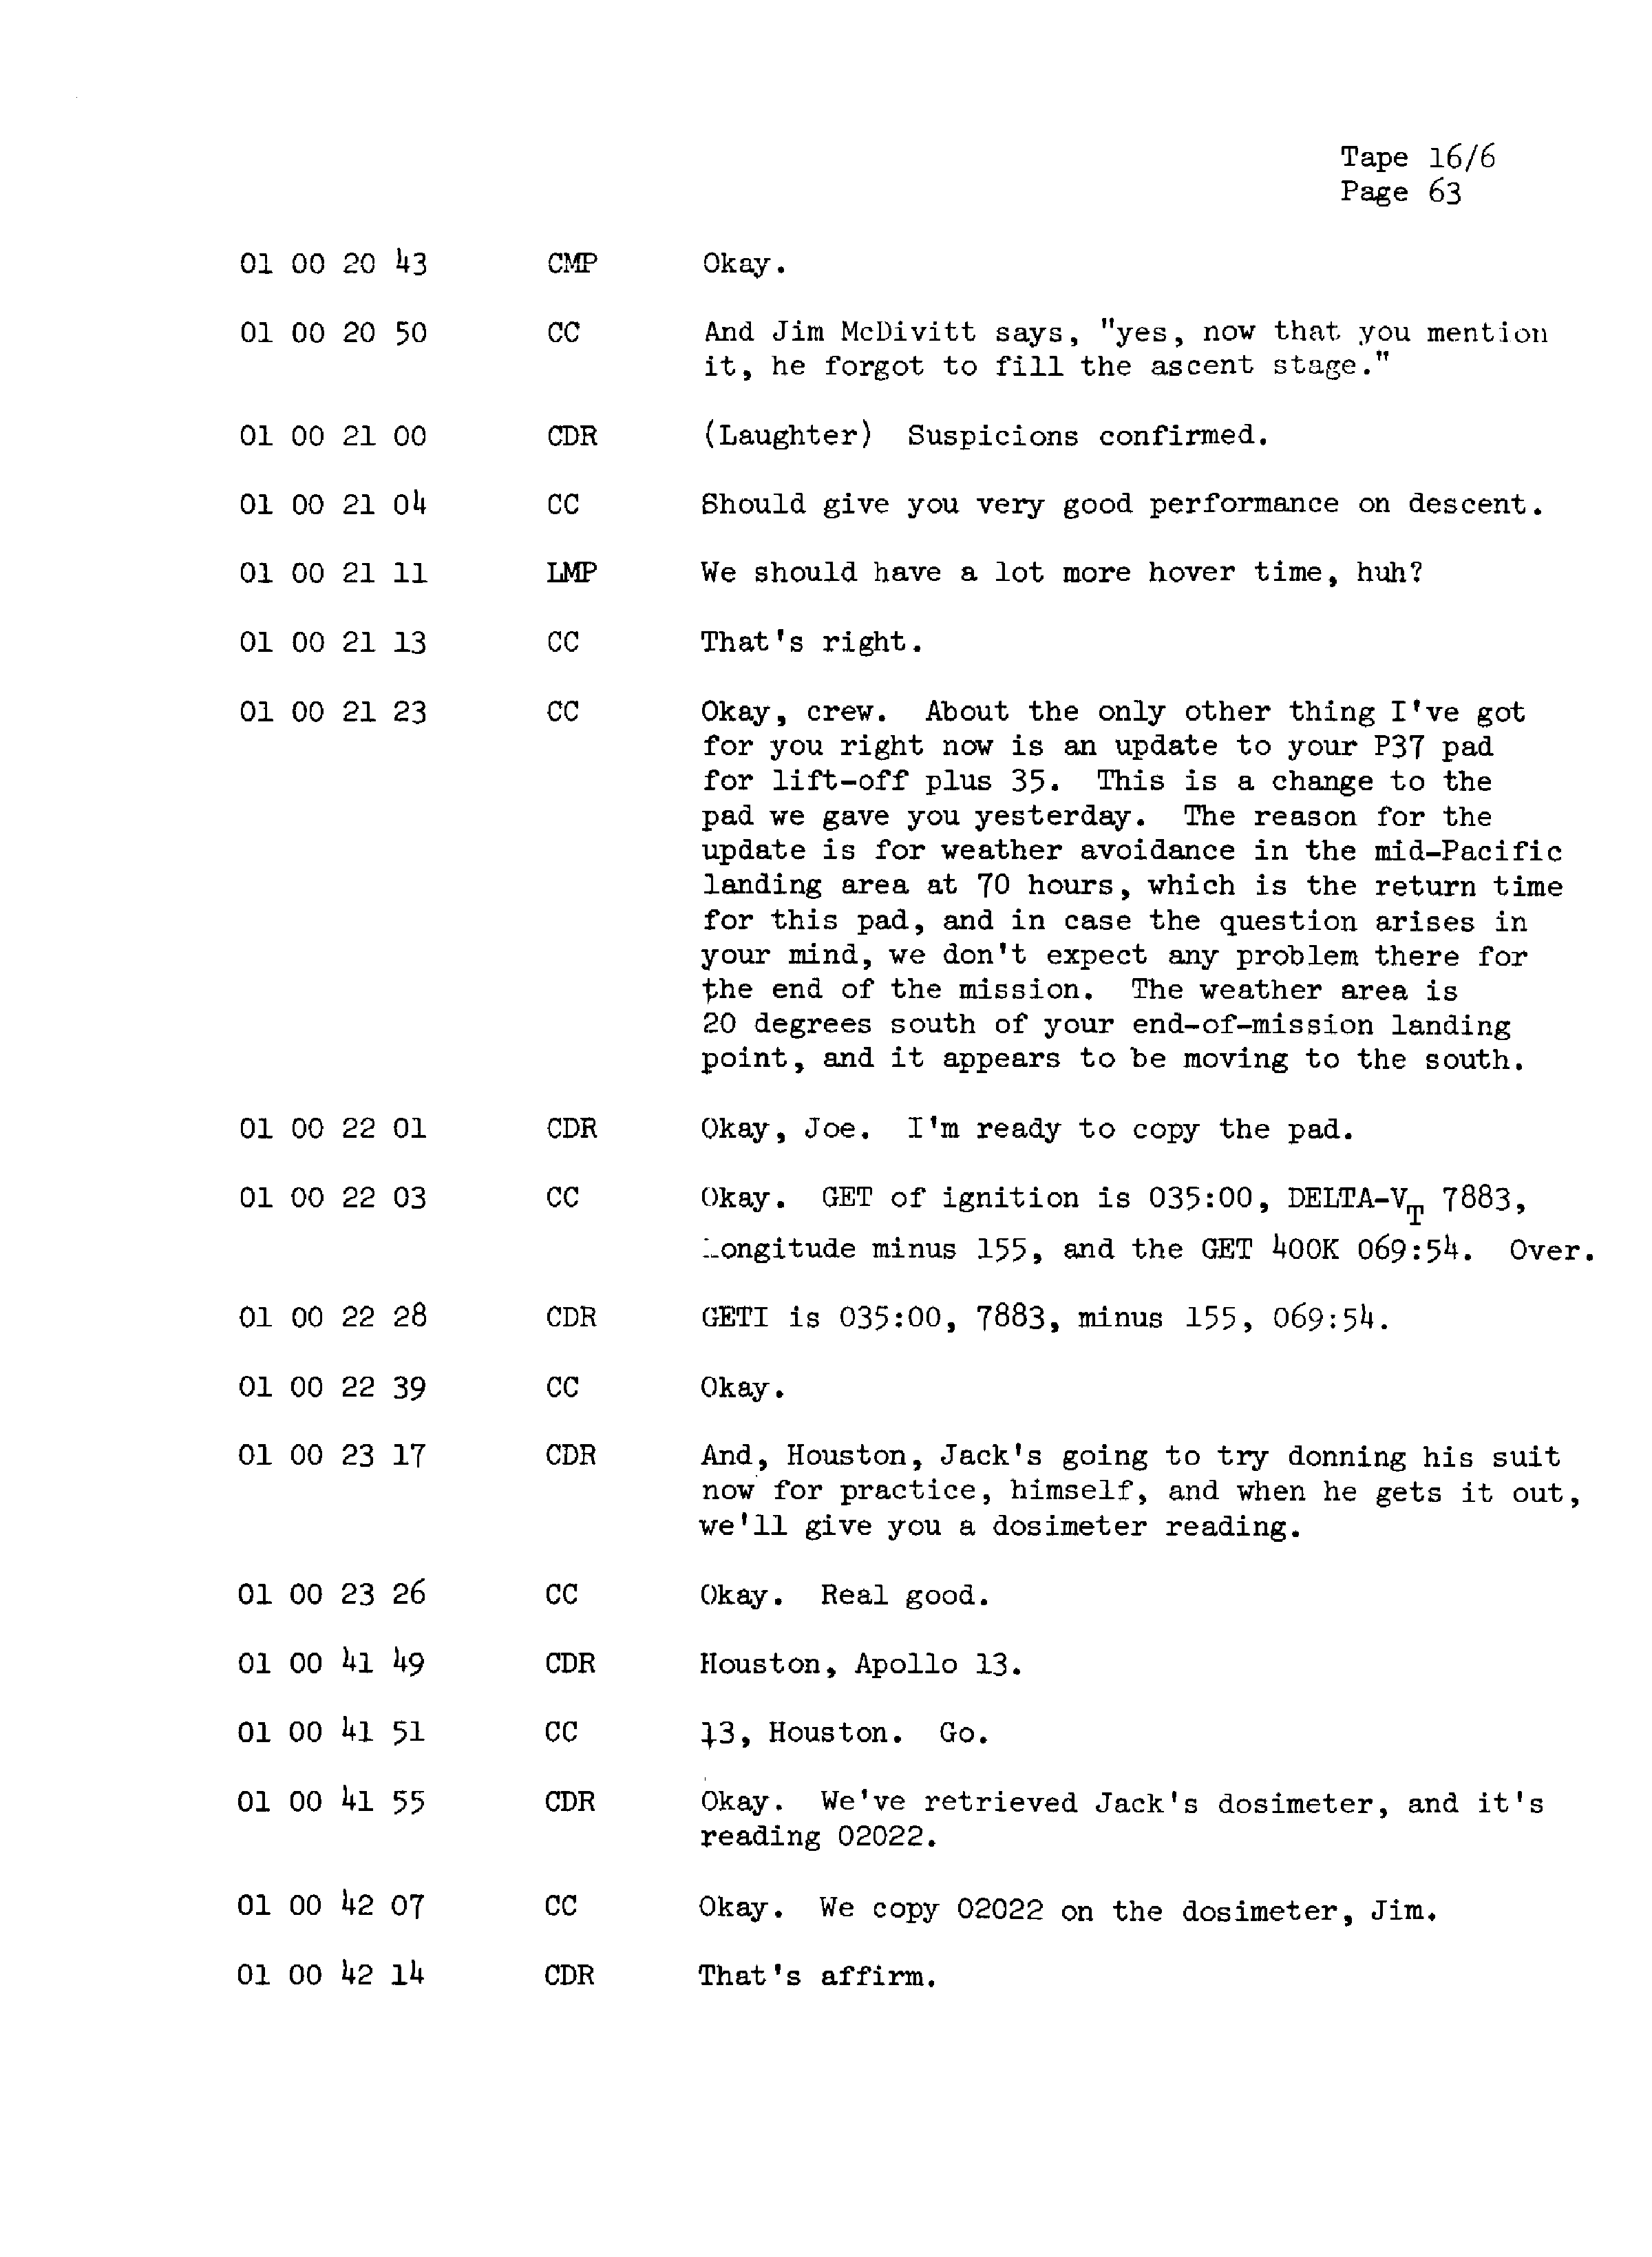 Page 70 of Apollo 13’s original transcript